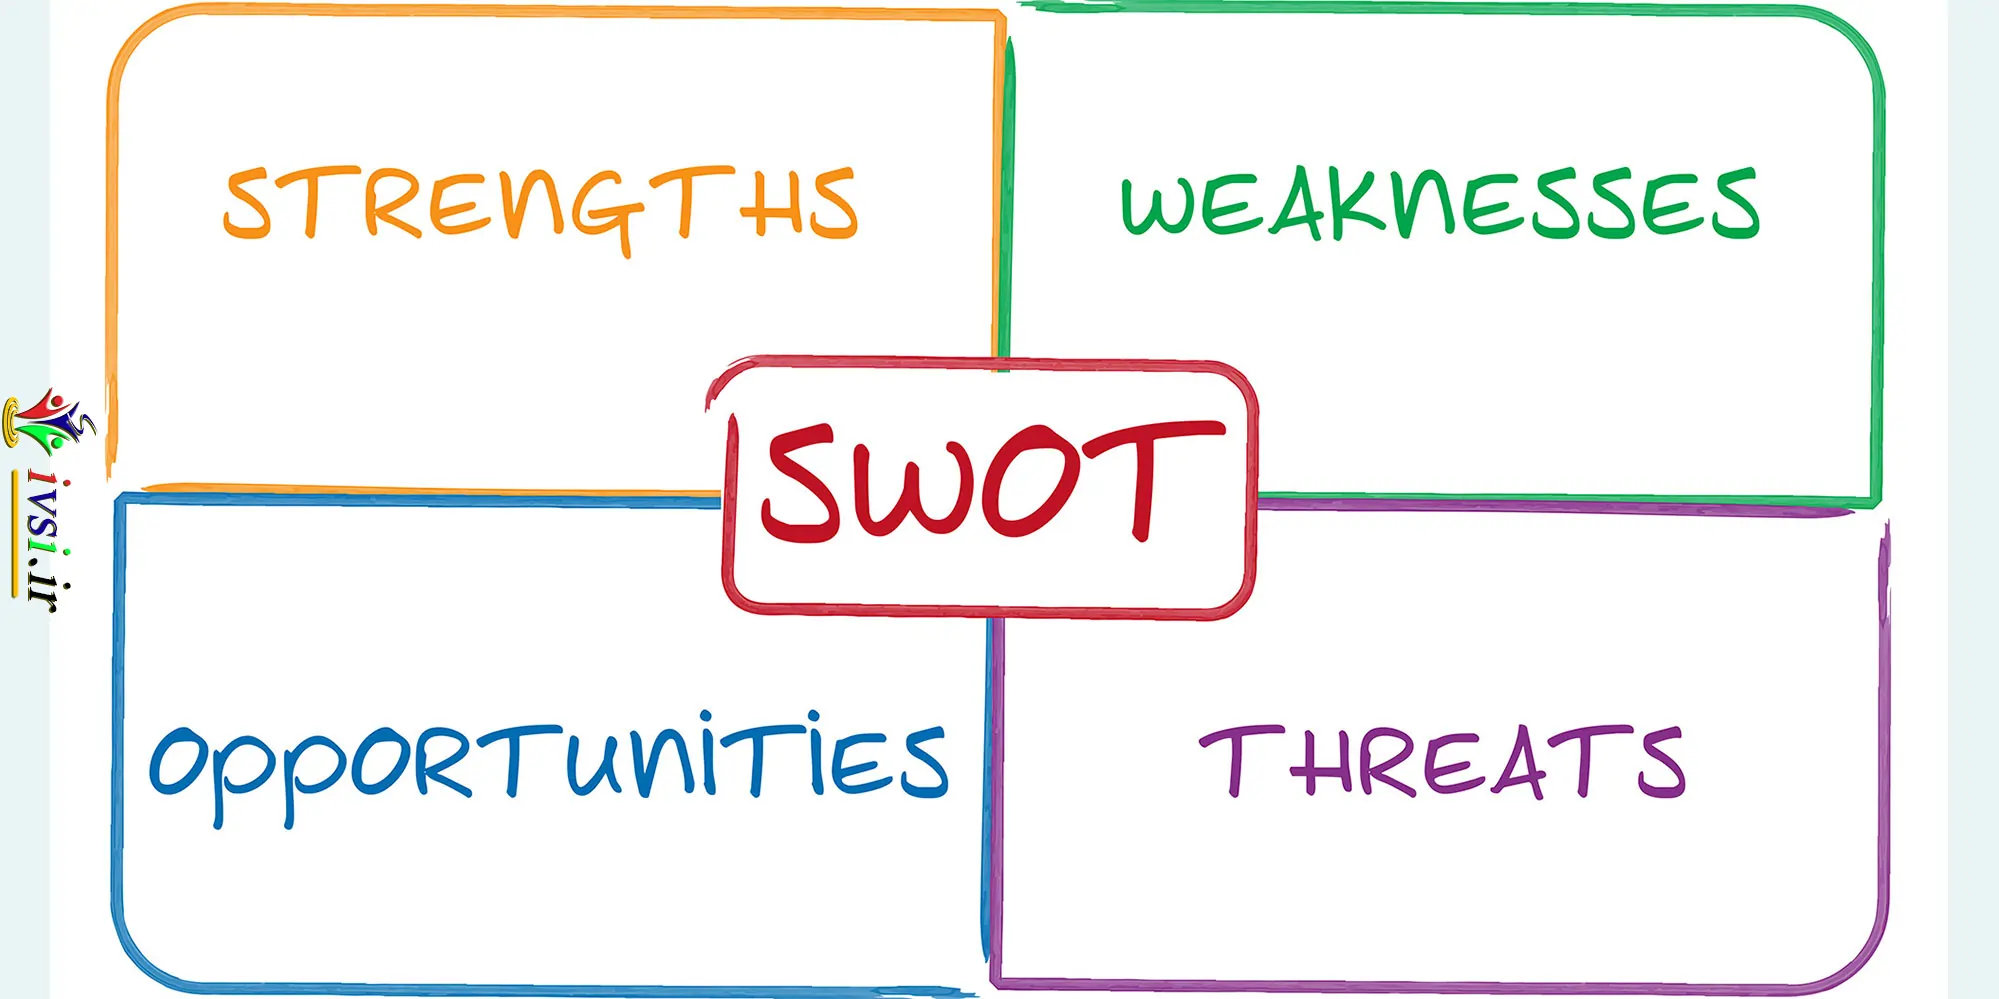 نحوه استفاده از تحلیل SWOT برای استراتژی بازاریابی